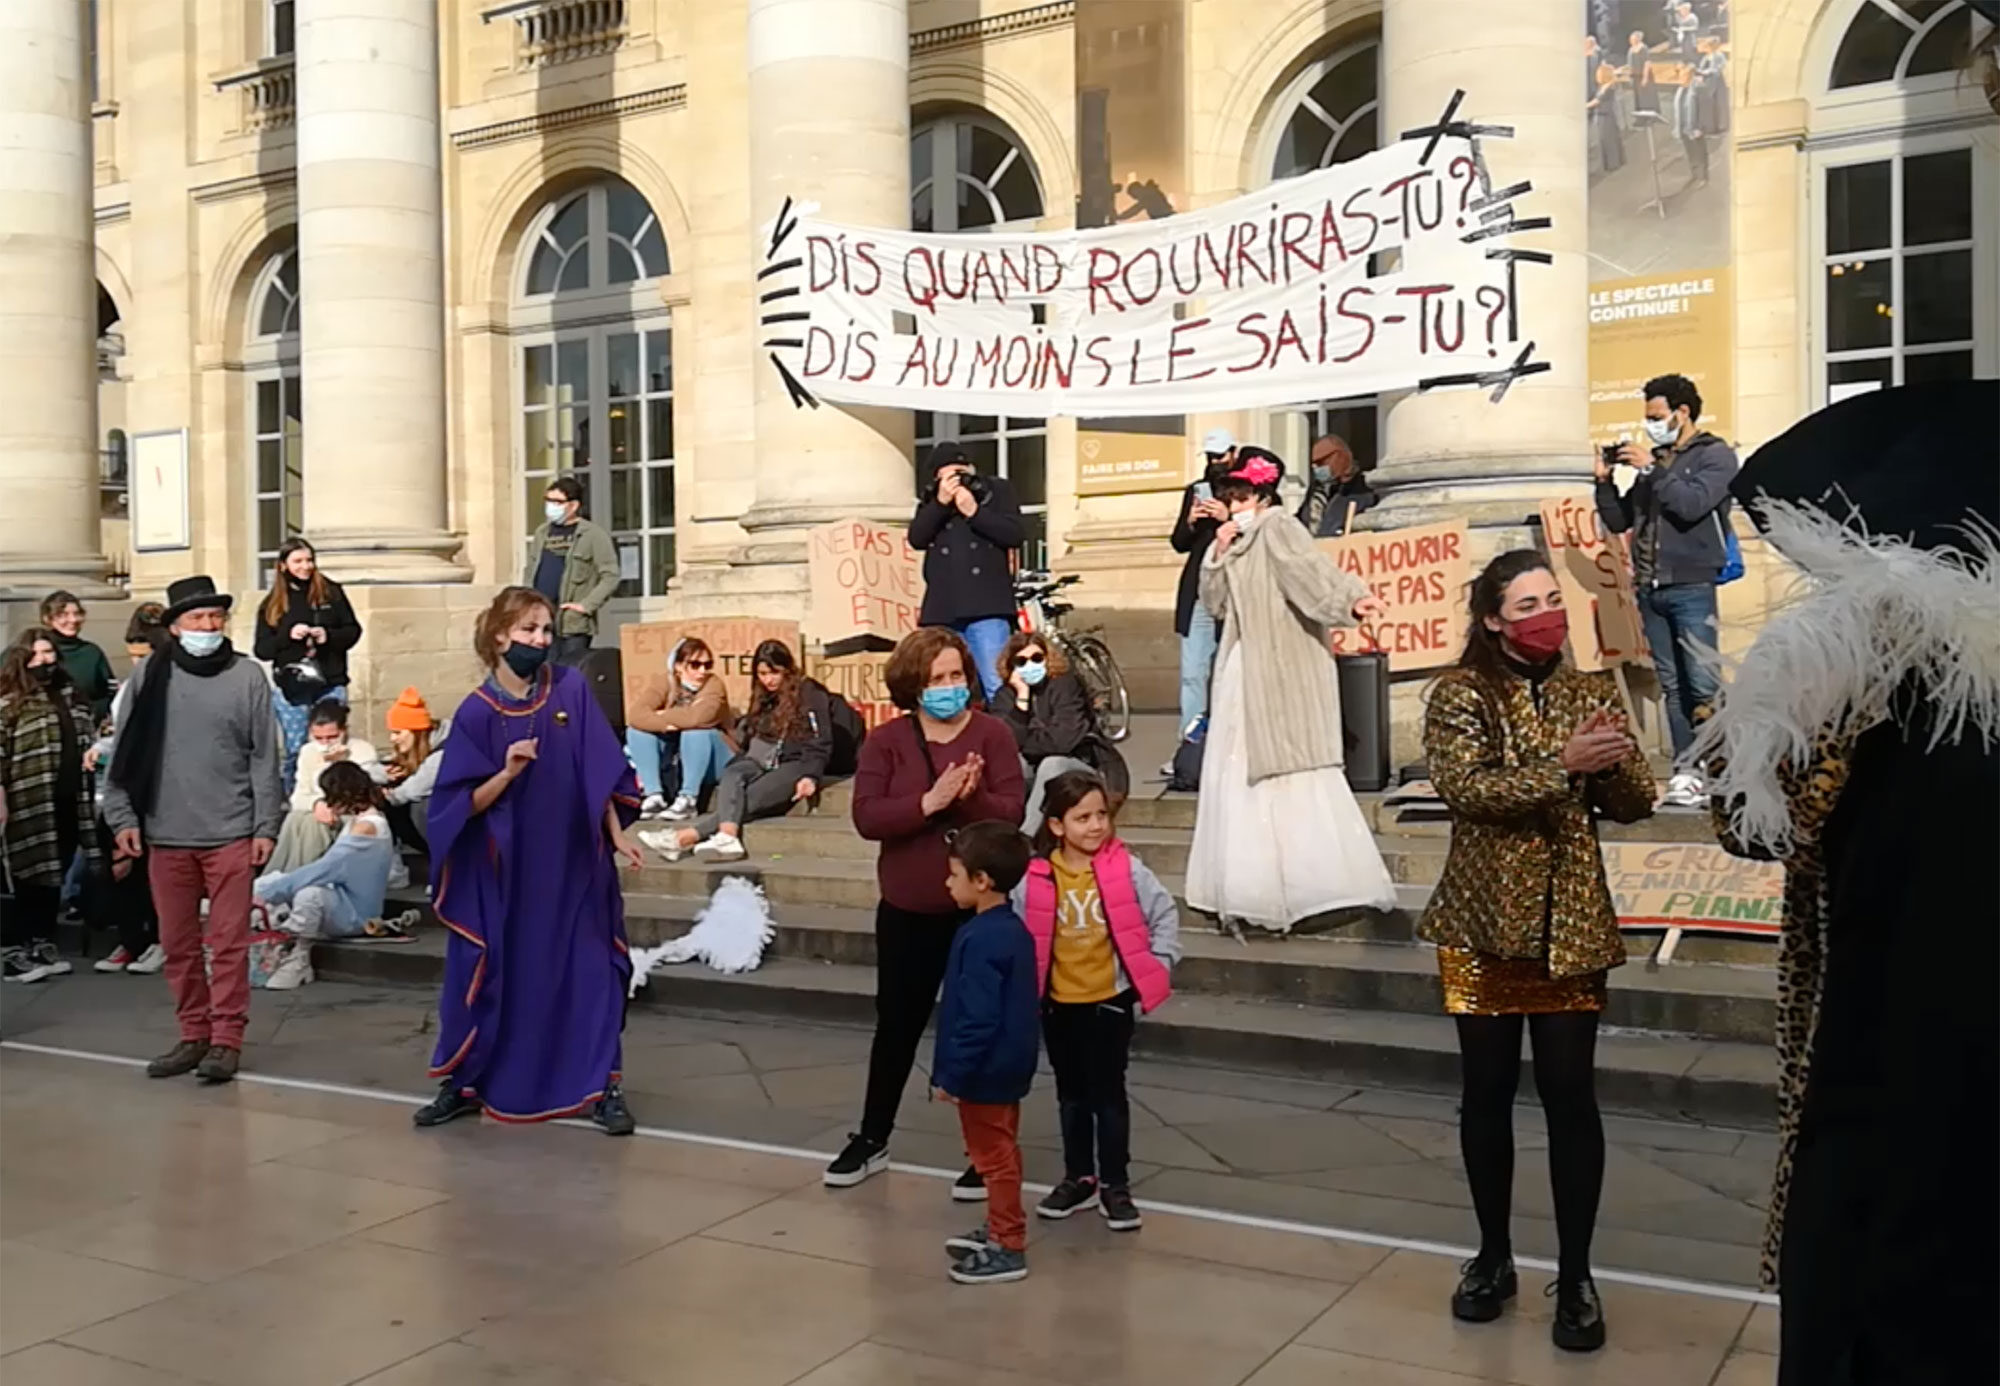 Marathon artistique ce dimanche à Bordeaux, mais pas d’occupation de théâtre en vue